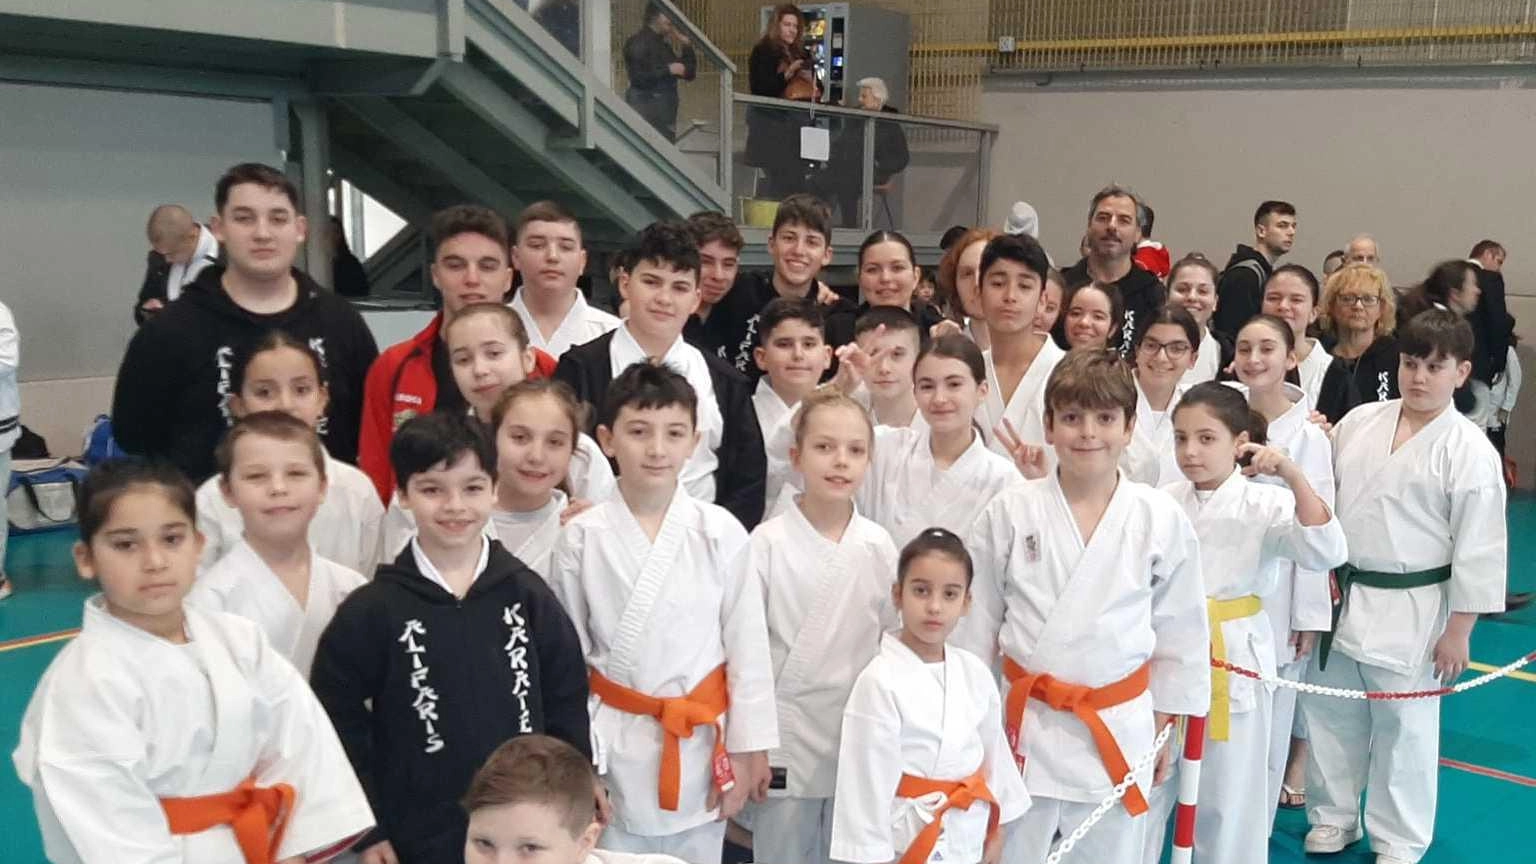 39 atleti dell'Alifaris Karate di Monsummano tornano con 57 medaglie dalle qualificazioni per il campionato italiano di karate, con successi sia nel kata che nel kumite. Prossimo appuntamento a maggio a Santa Croce in Toscana.